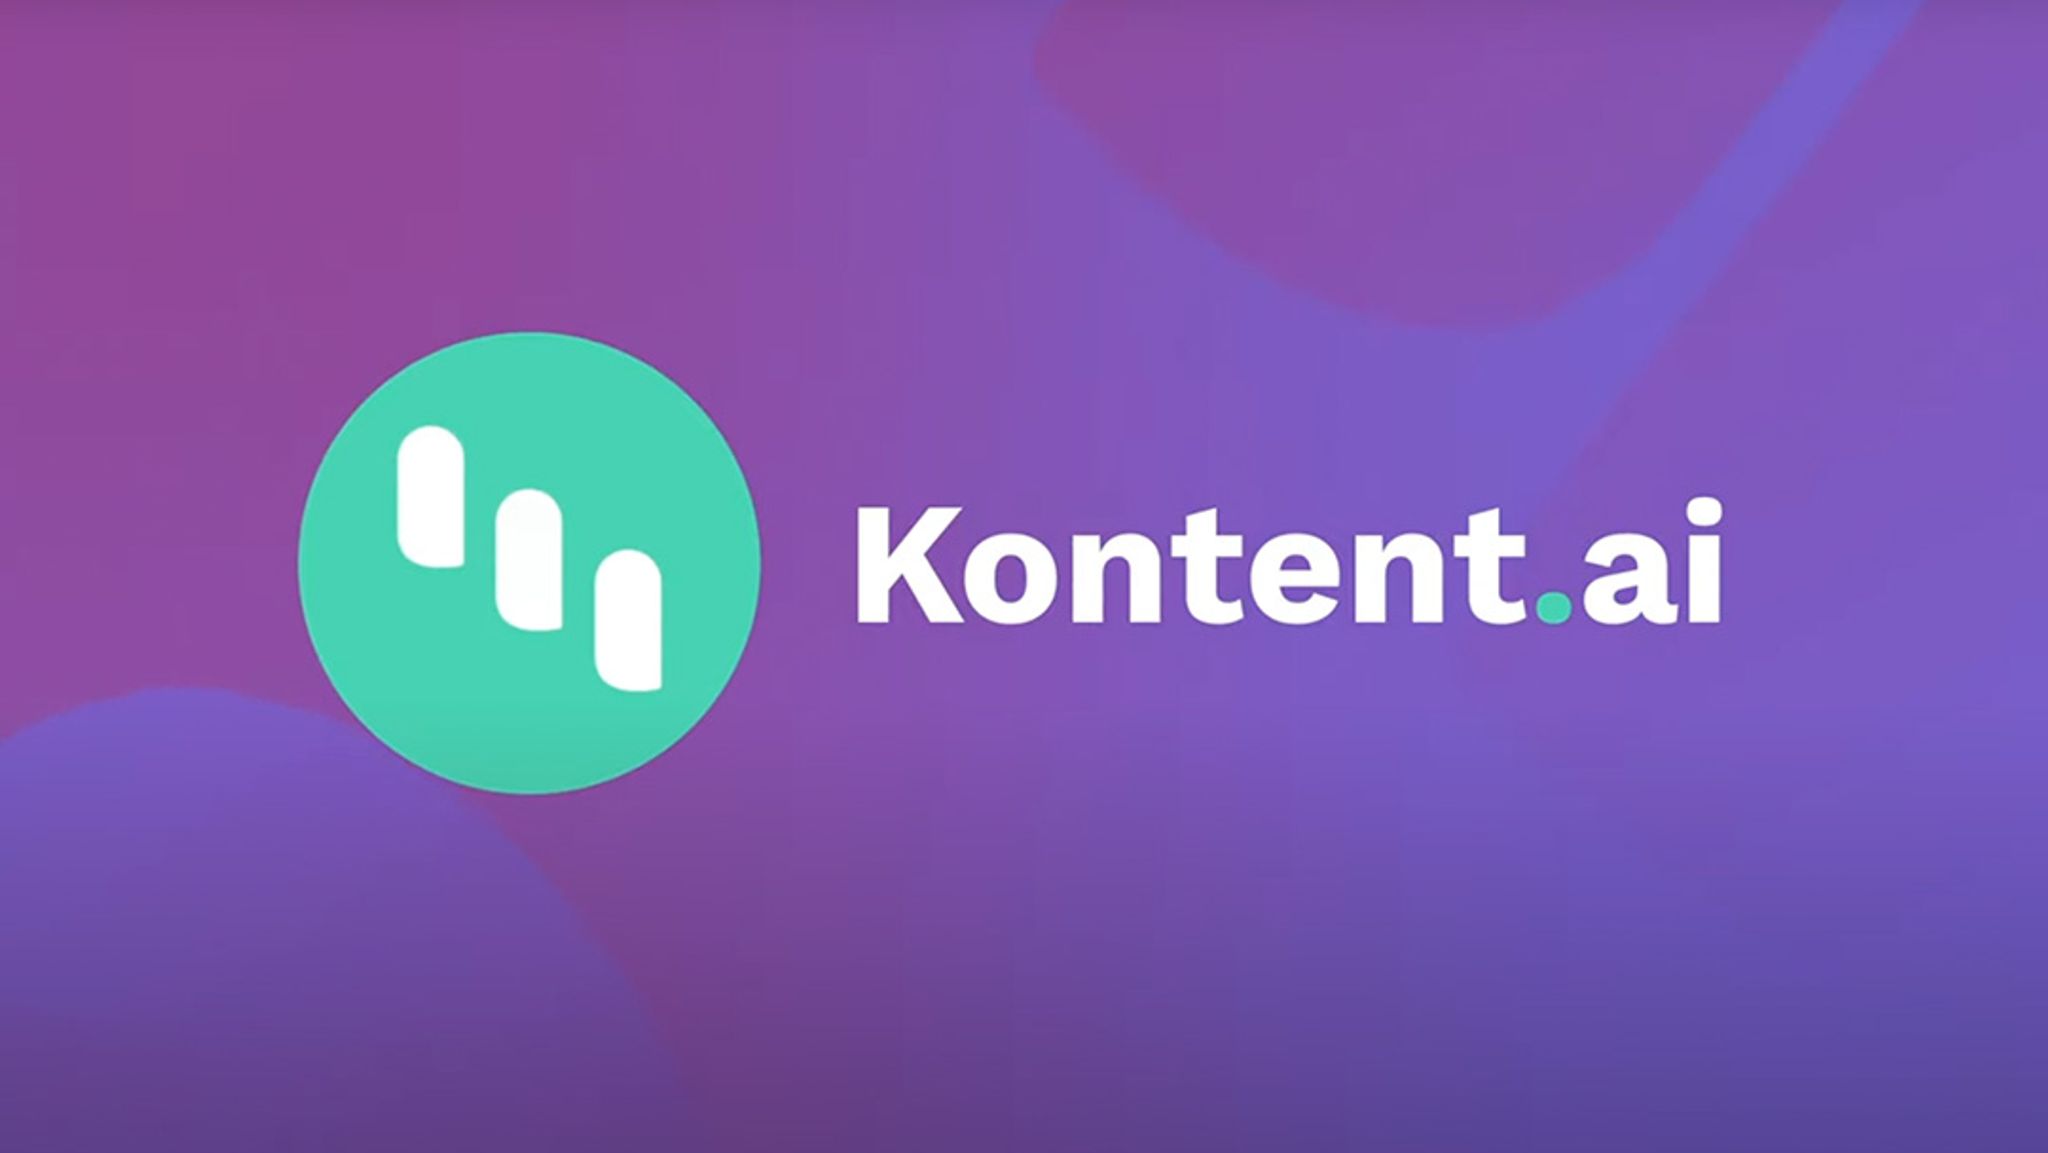 Kontent.ai logo against a tech background